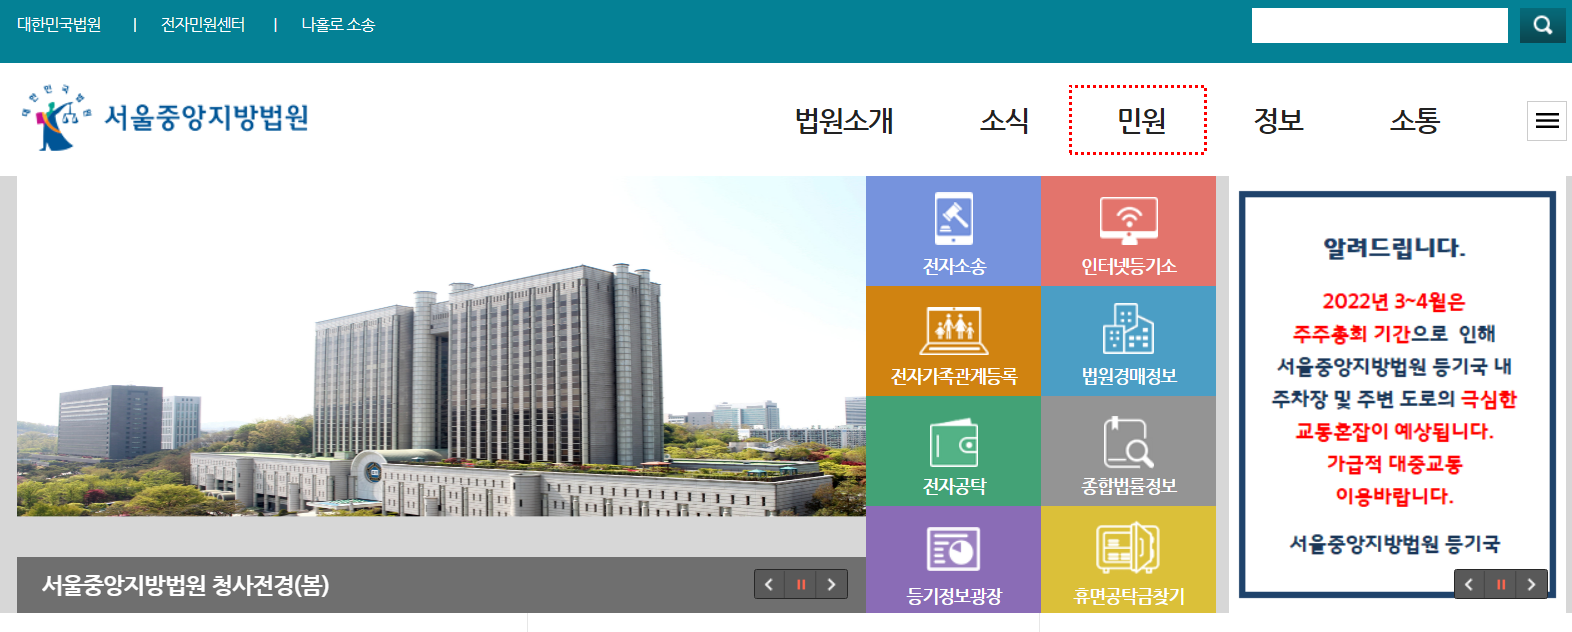 서울지방법원 홈페이지